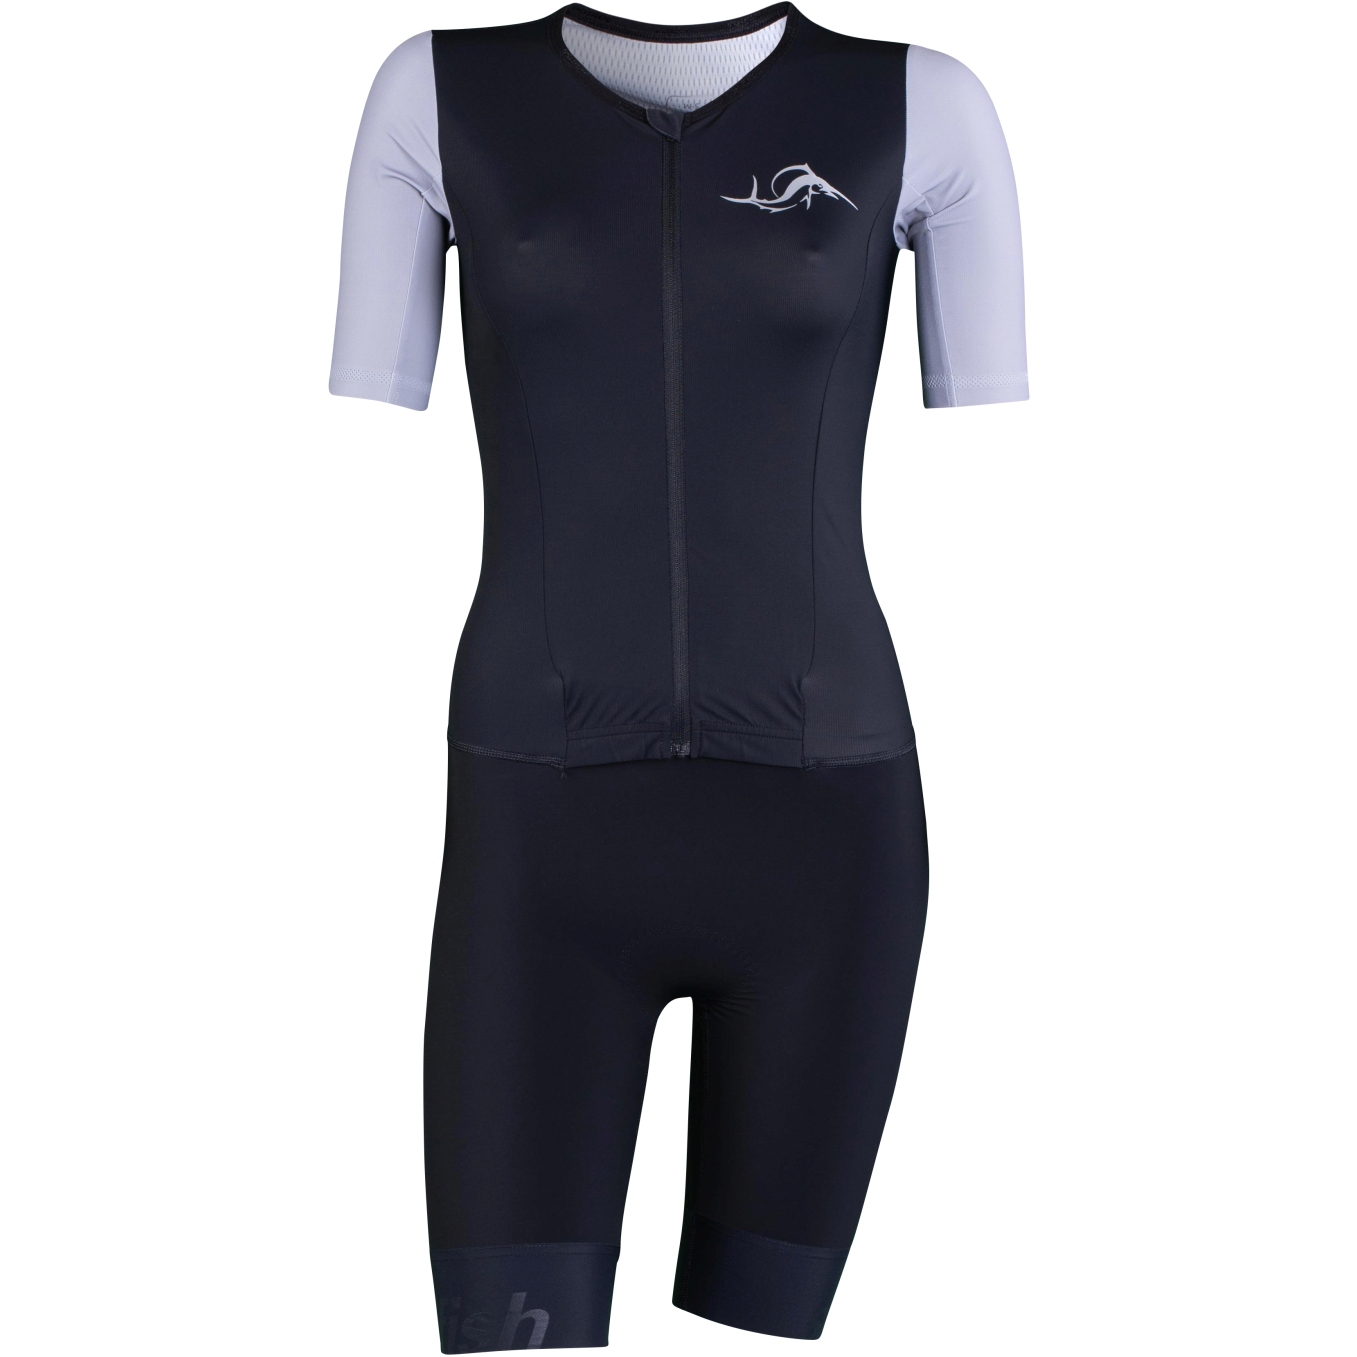 Produktbild von sailfish Aerosuit Perform Triathlon-Einteiler Damen - schwarz